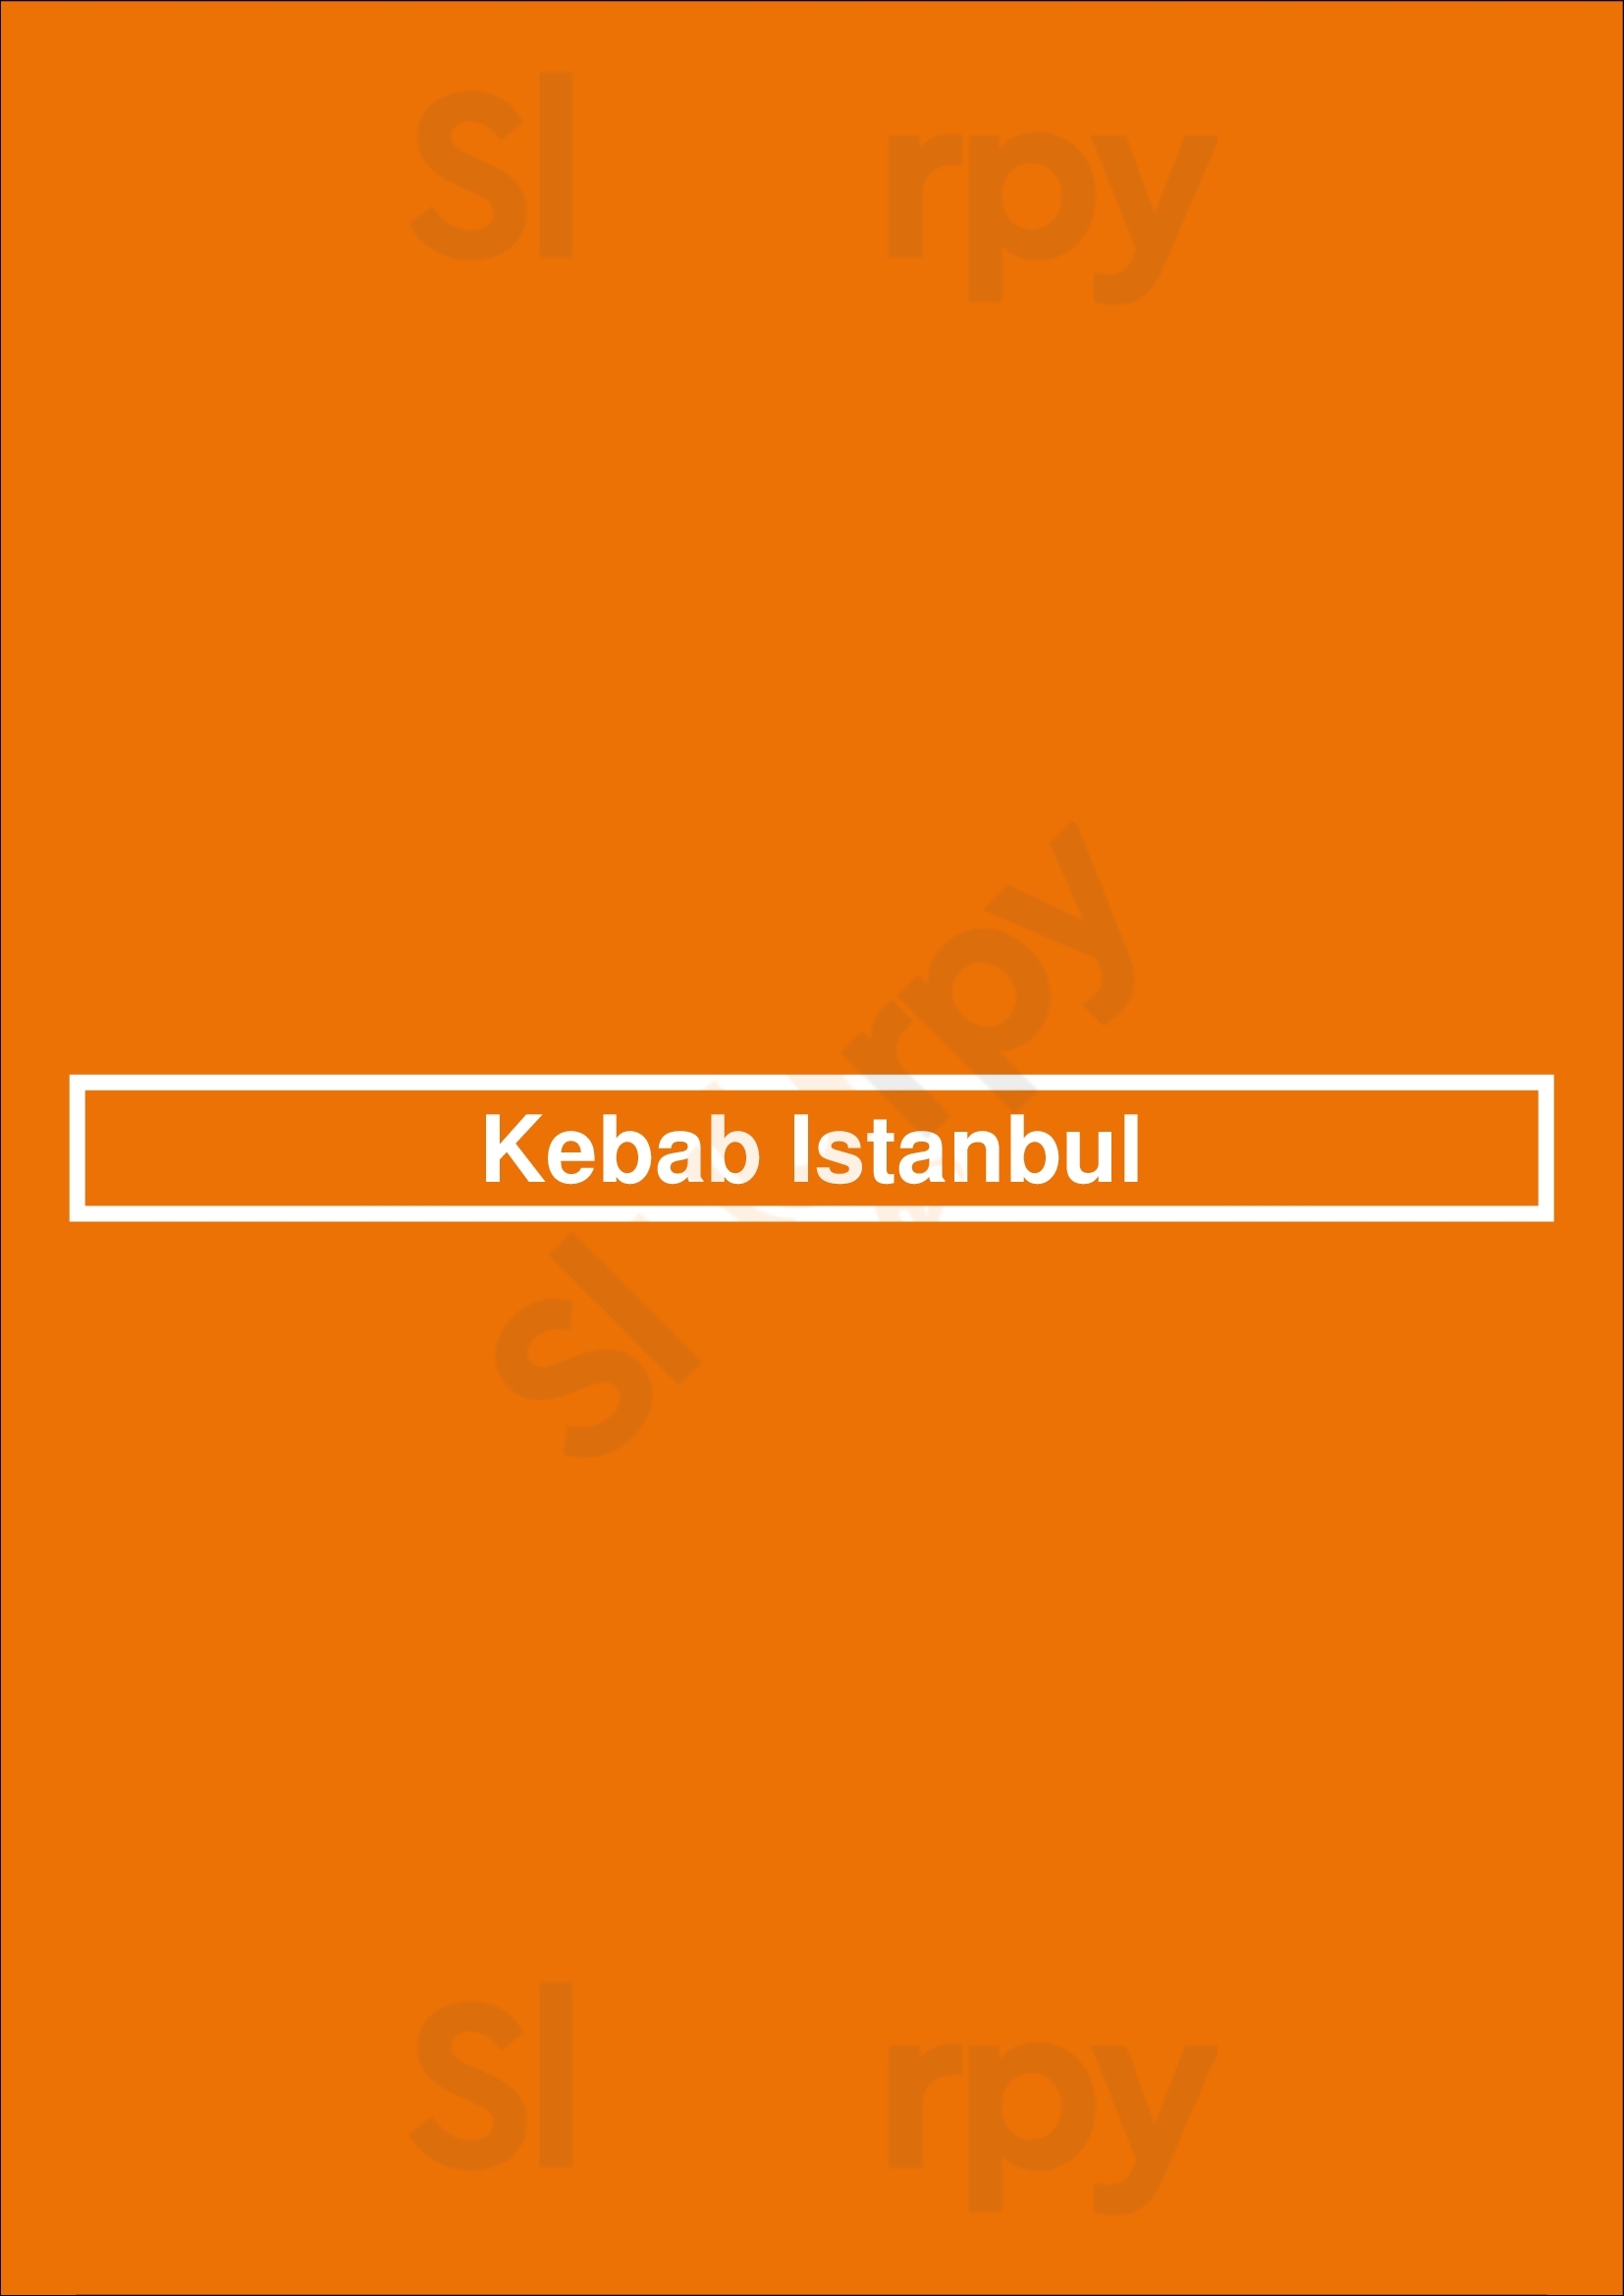 Kebab Istanbul Huddersfield Menu - 1